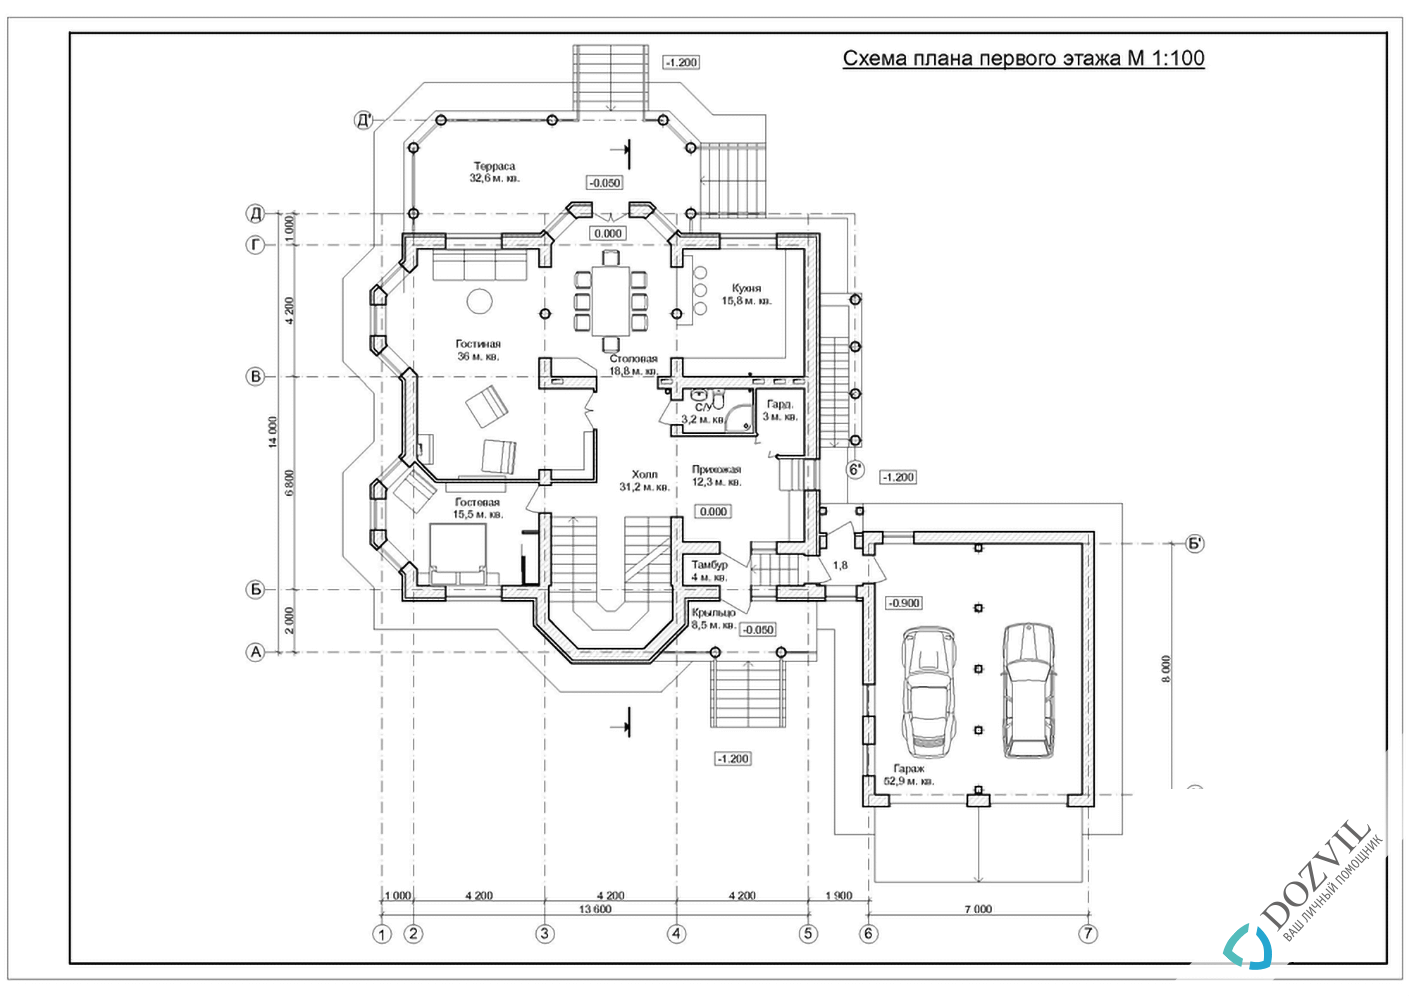 Разрешение на строительство > Дома с общей площадью до 500 квадратных метров > 2 этап - Разработка эскиза намерений строительства